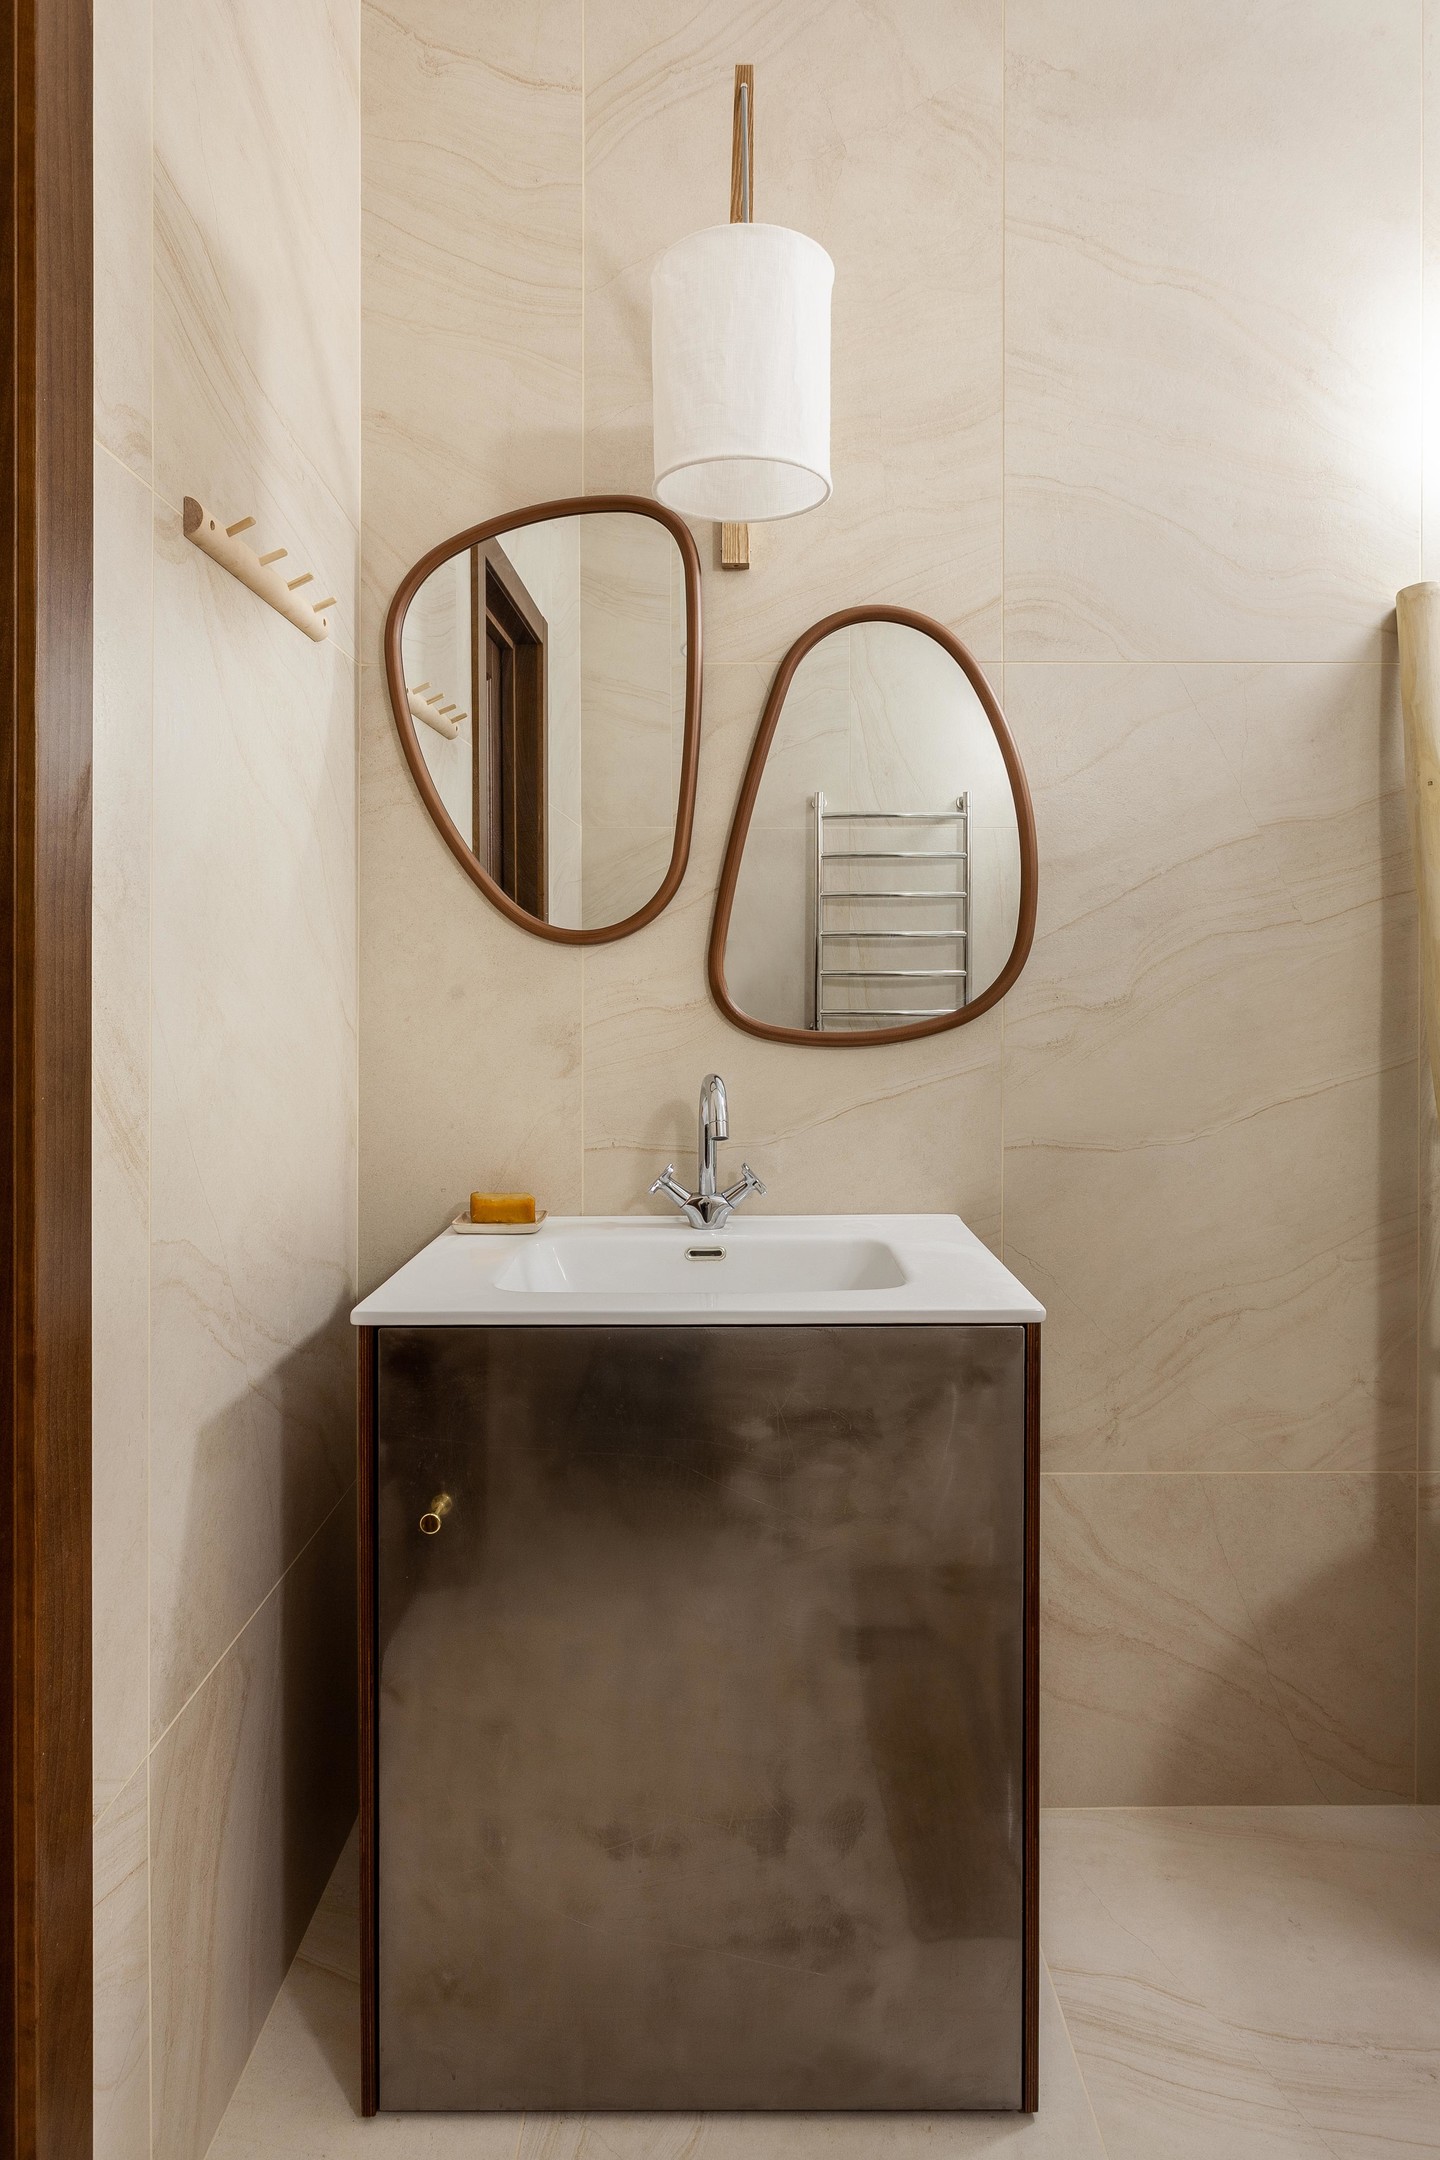 Phòng tắm dịu dàng tuyệt đối với gạch ốp tường và lát sàn màu be sang trọng. Hệ thống đèn chiếu sáng kết hợp với bộ đôi gương treo tường không chỉ để soi mà còn trang trí cho không gian thêm đẹp.